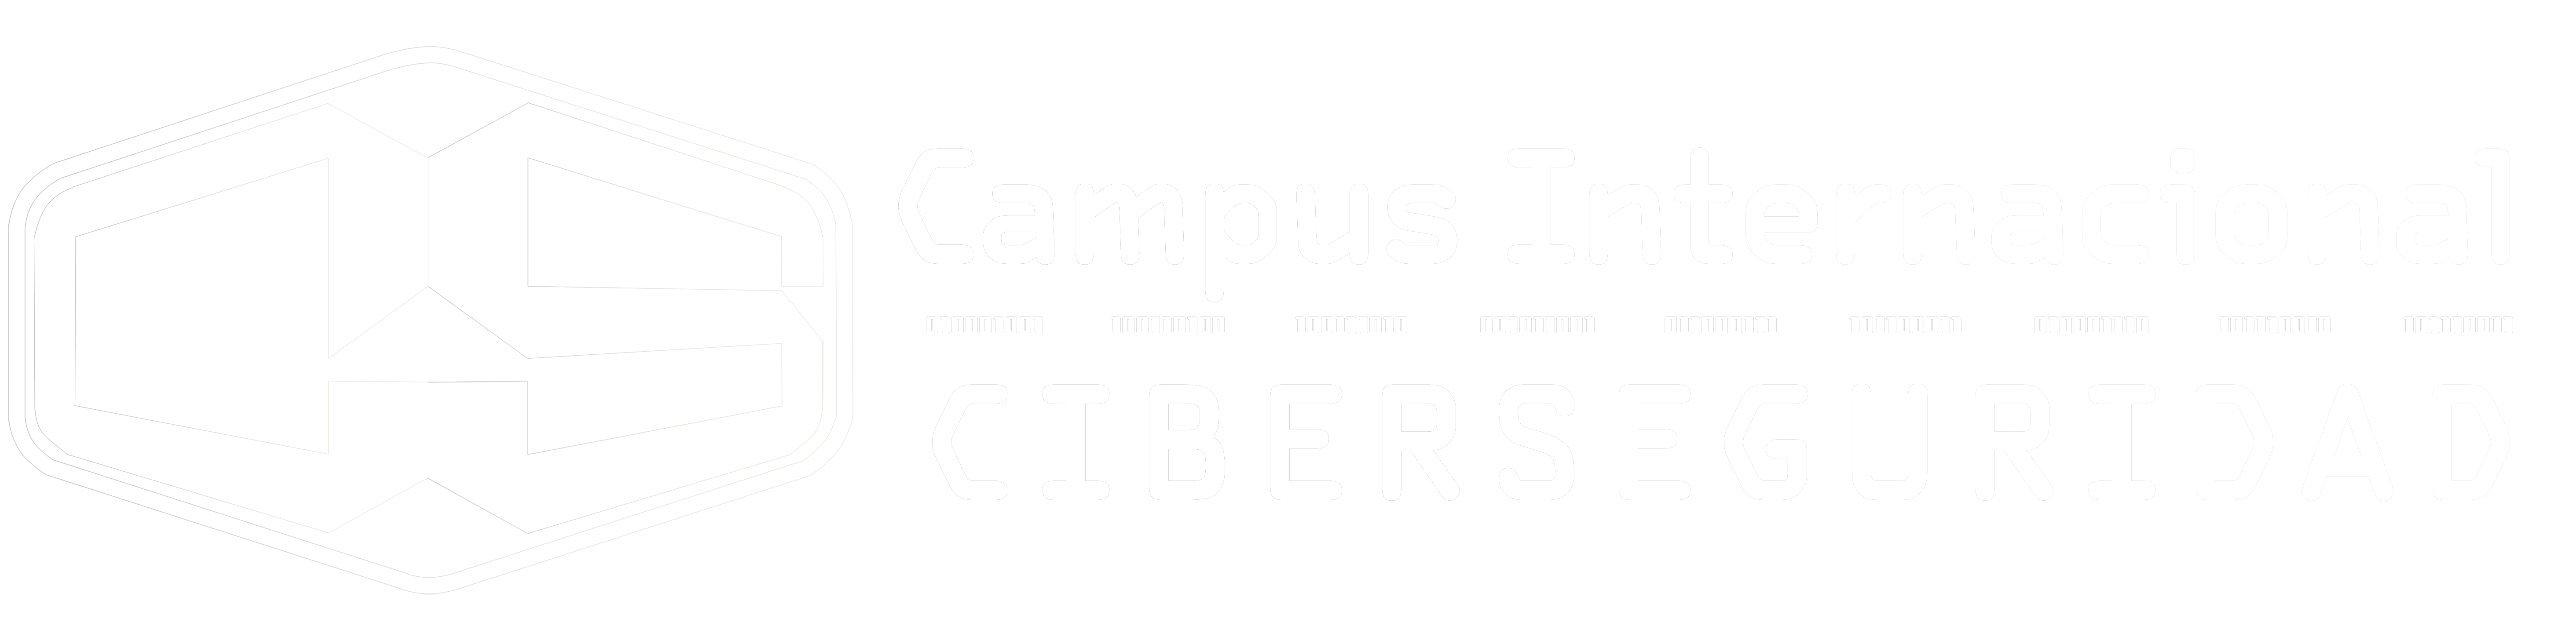 CampusCiberseguridad blanco